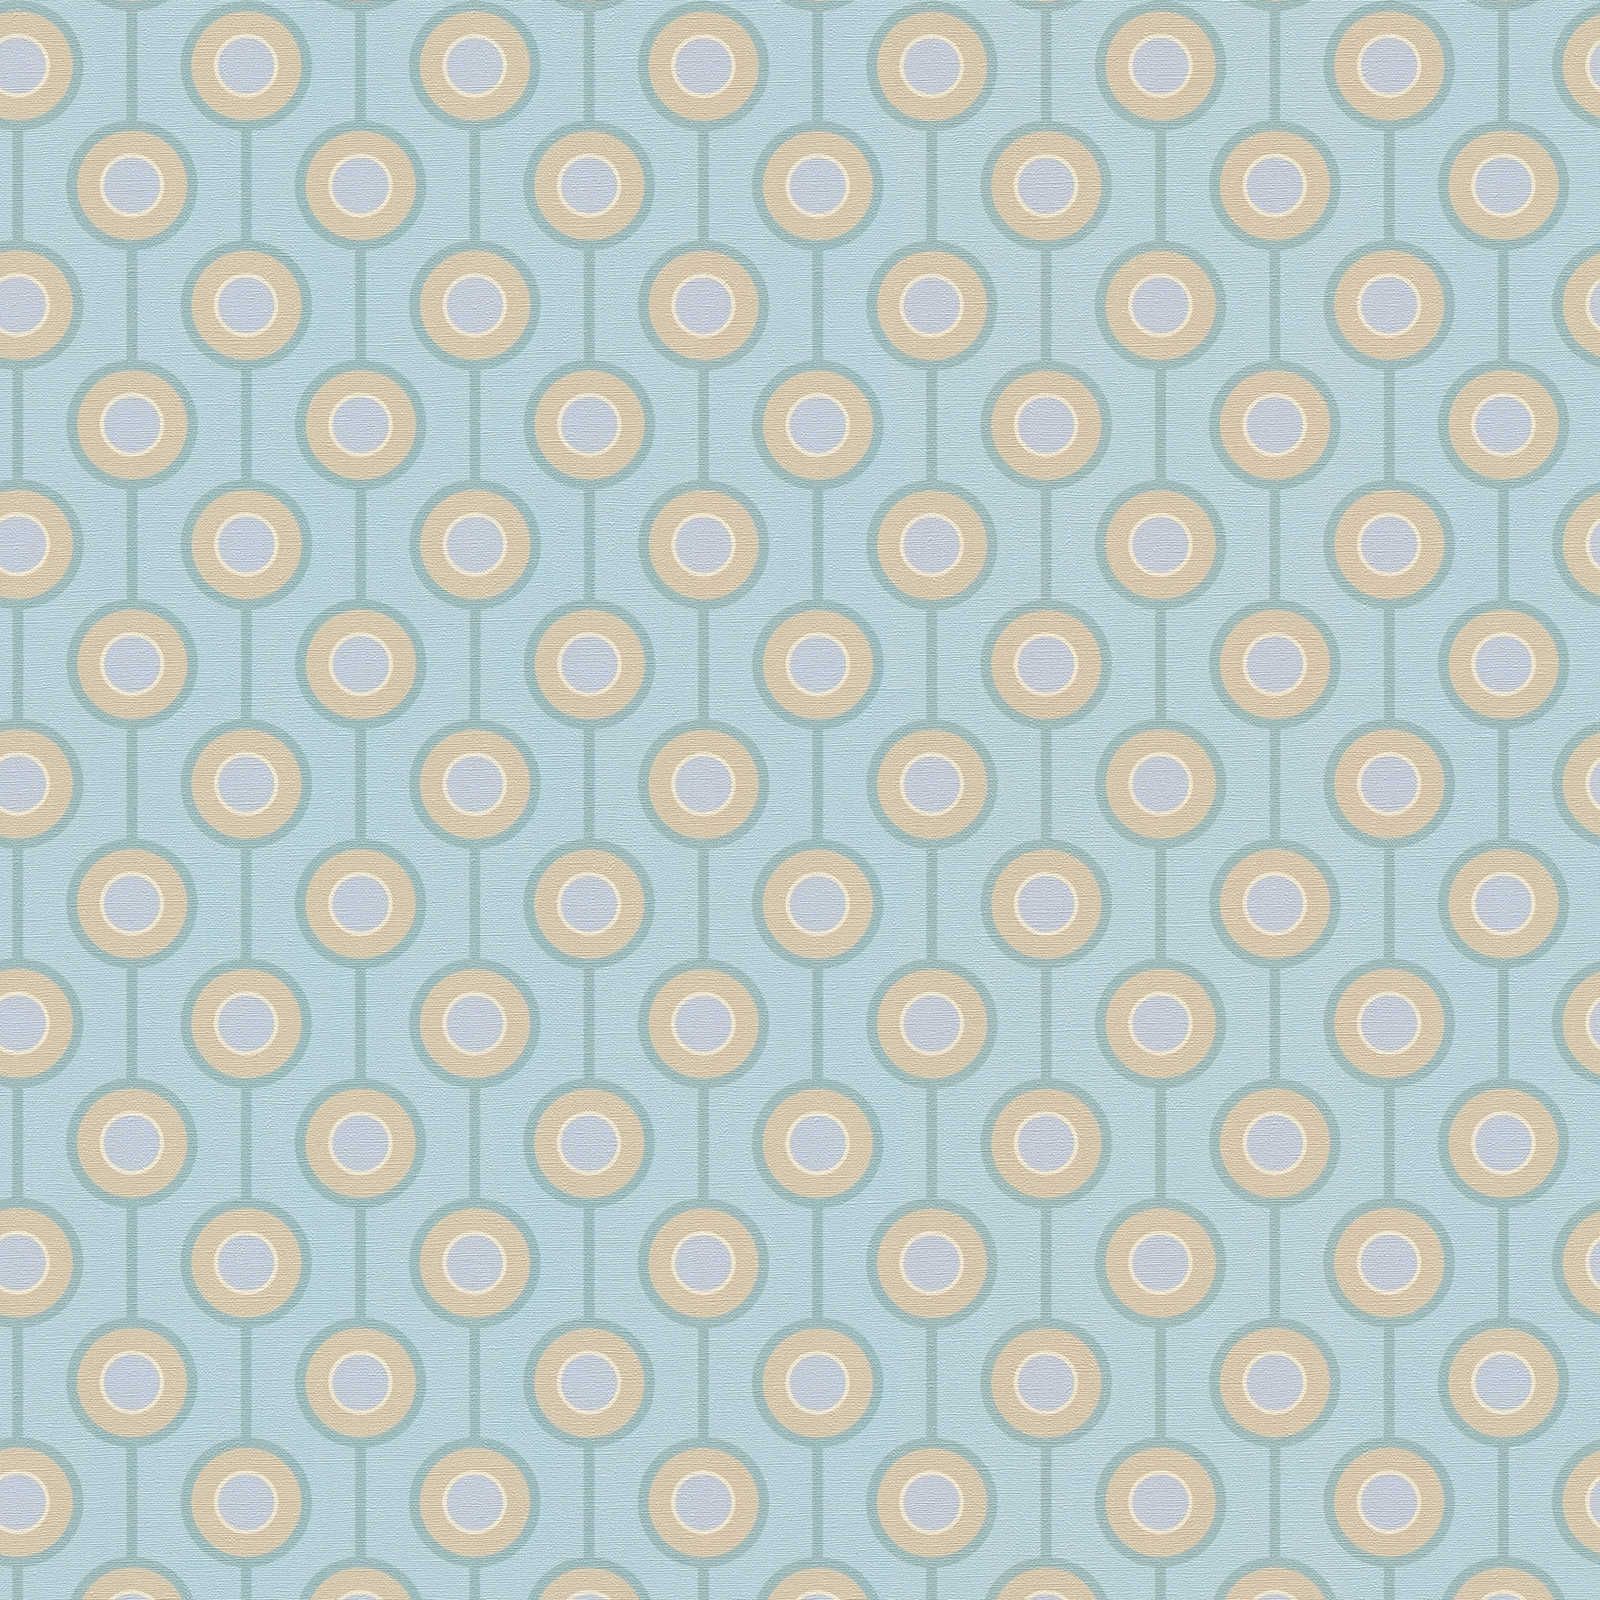 Retro cirkelpatroon op vliesbehang met lichte structuur - turkoois, blauw, beige
